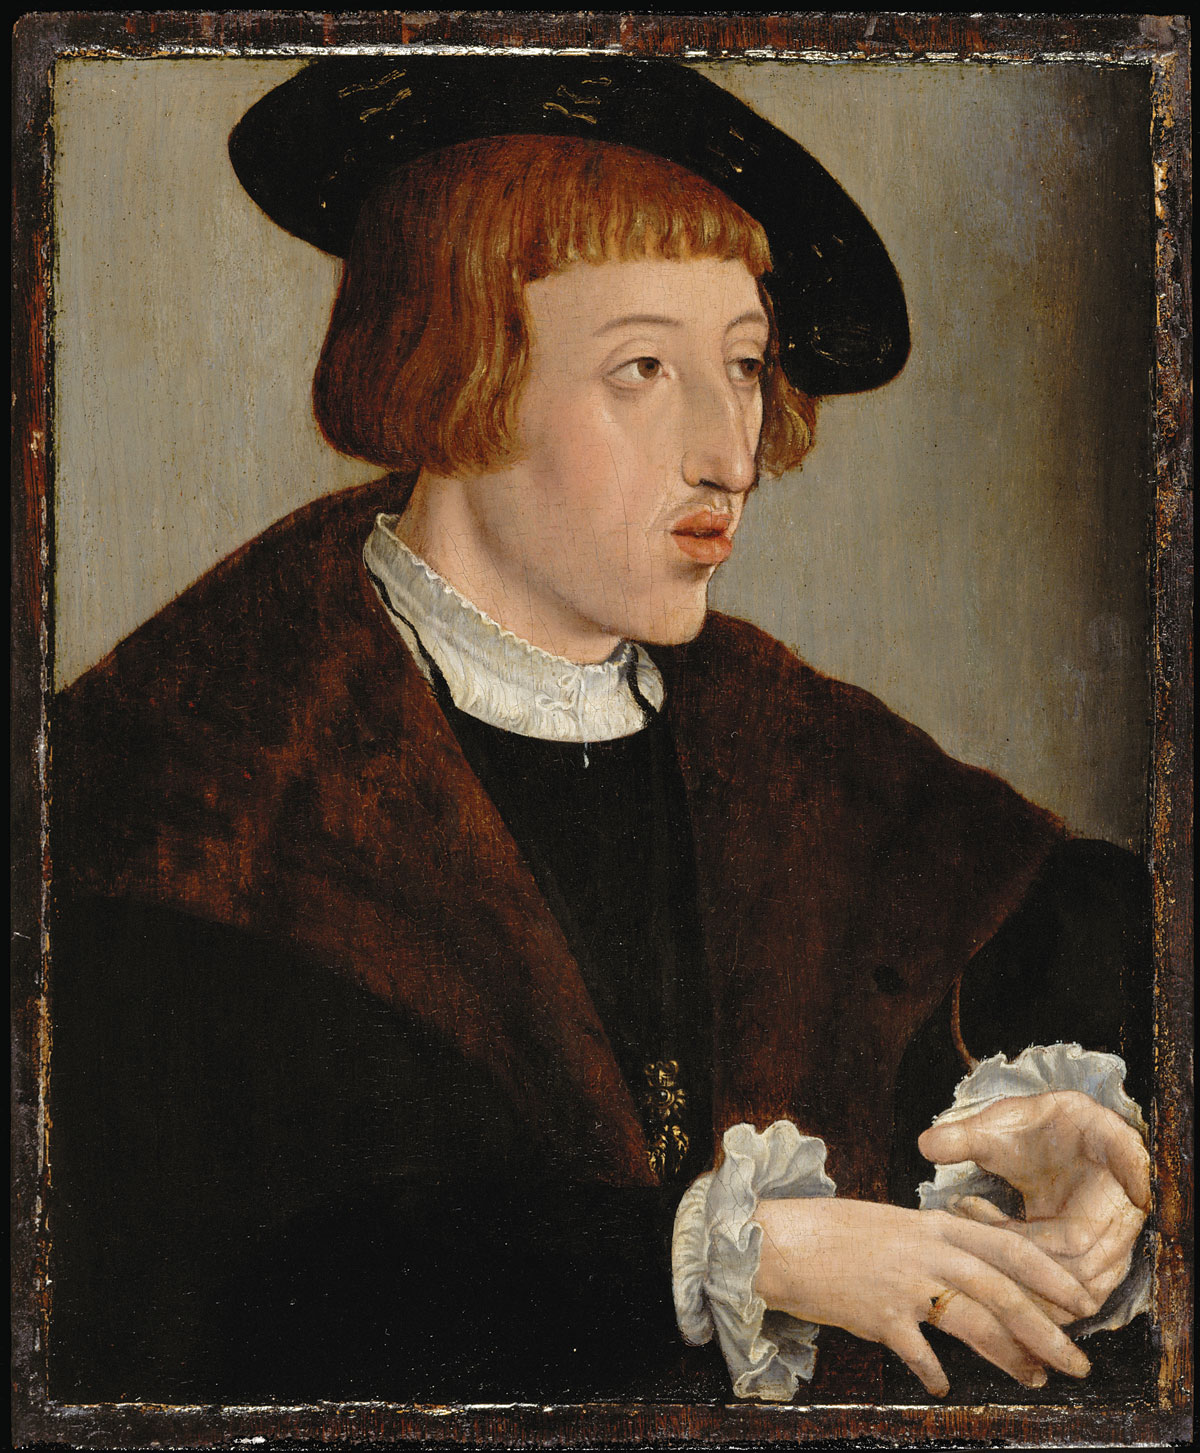 Český a uherský král Ferdinand I. Portrétoval v roce 1530 Jan Cornelisz Vermeyen. KHM